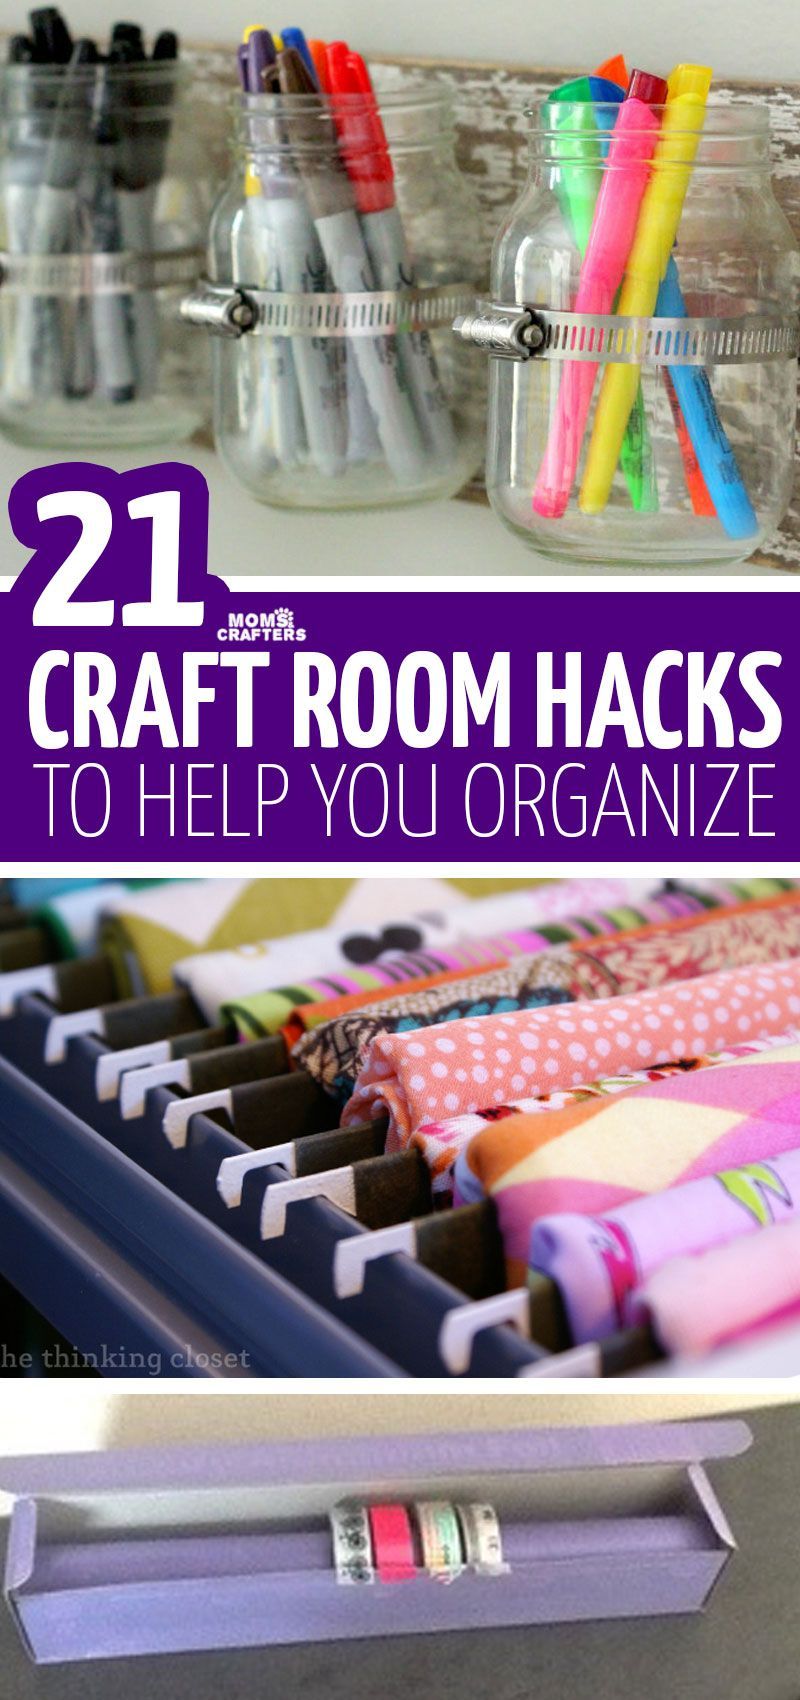 18 diy Crafts organization ideas